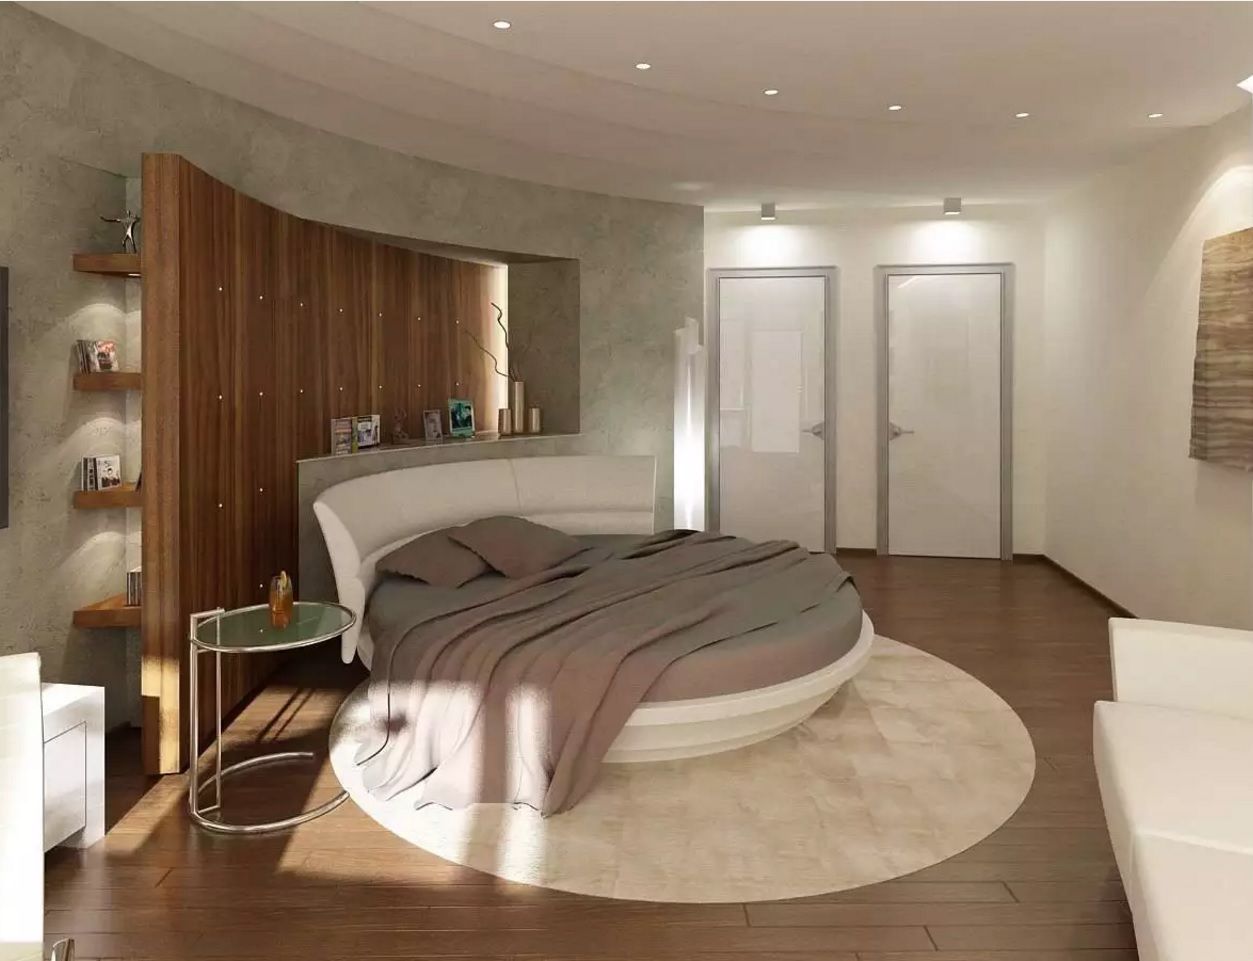 curved bedroom furniture uk